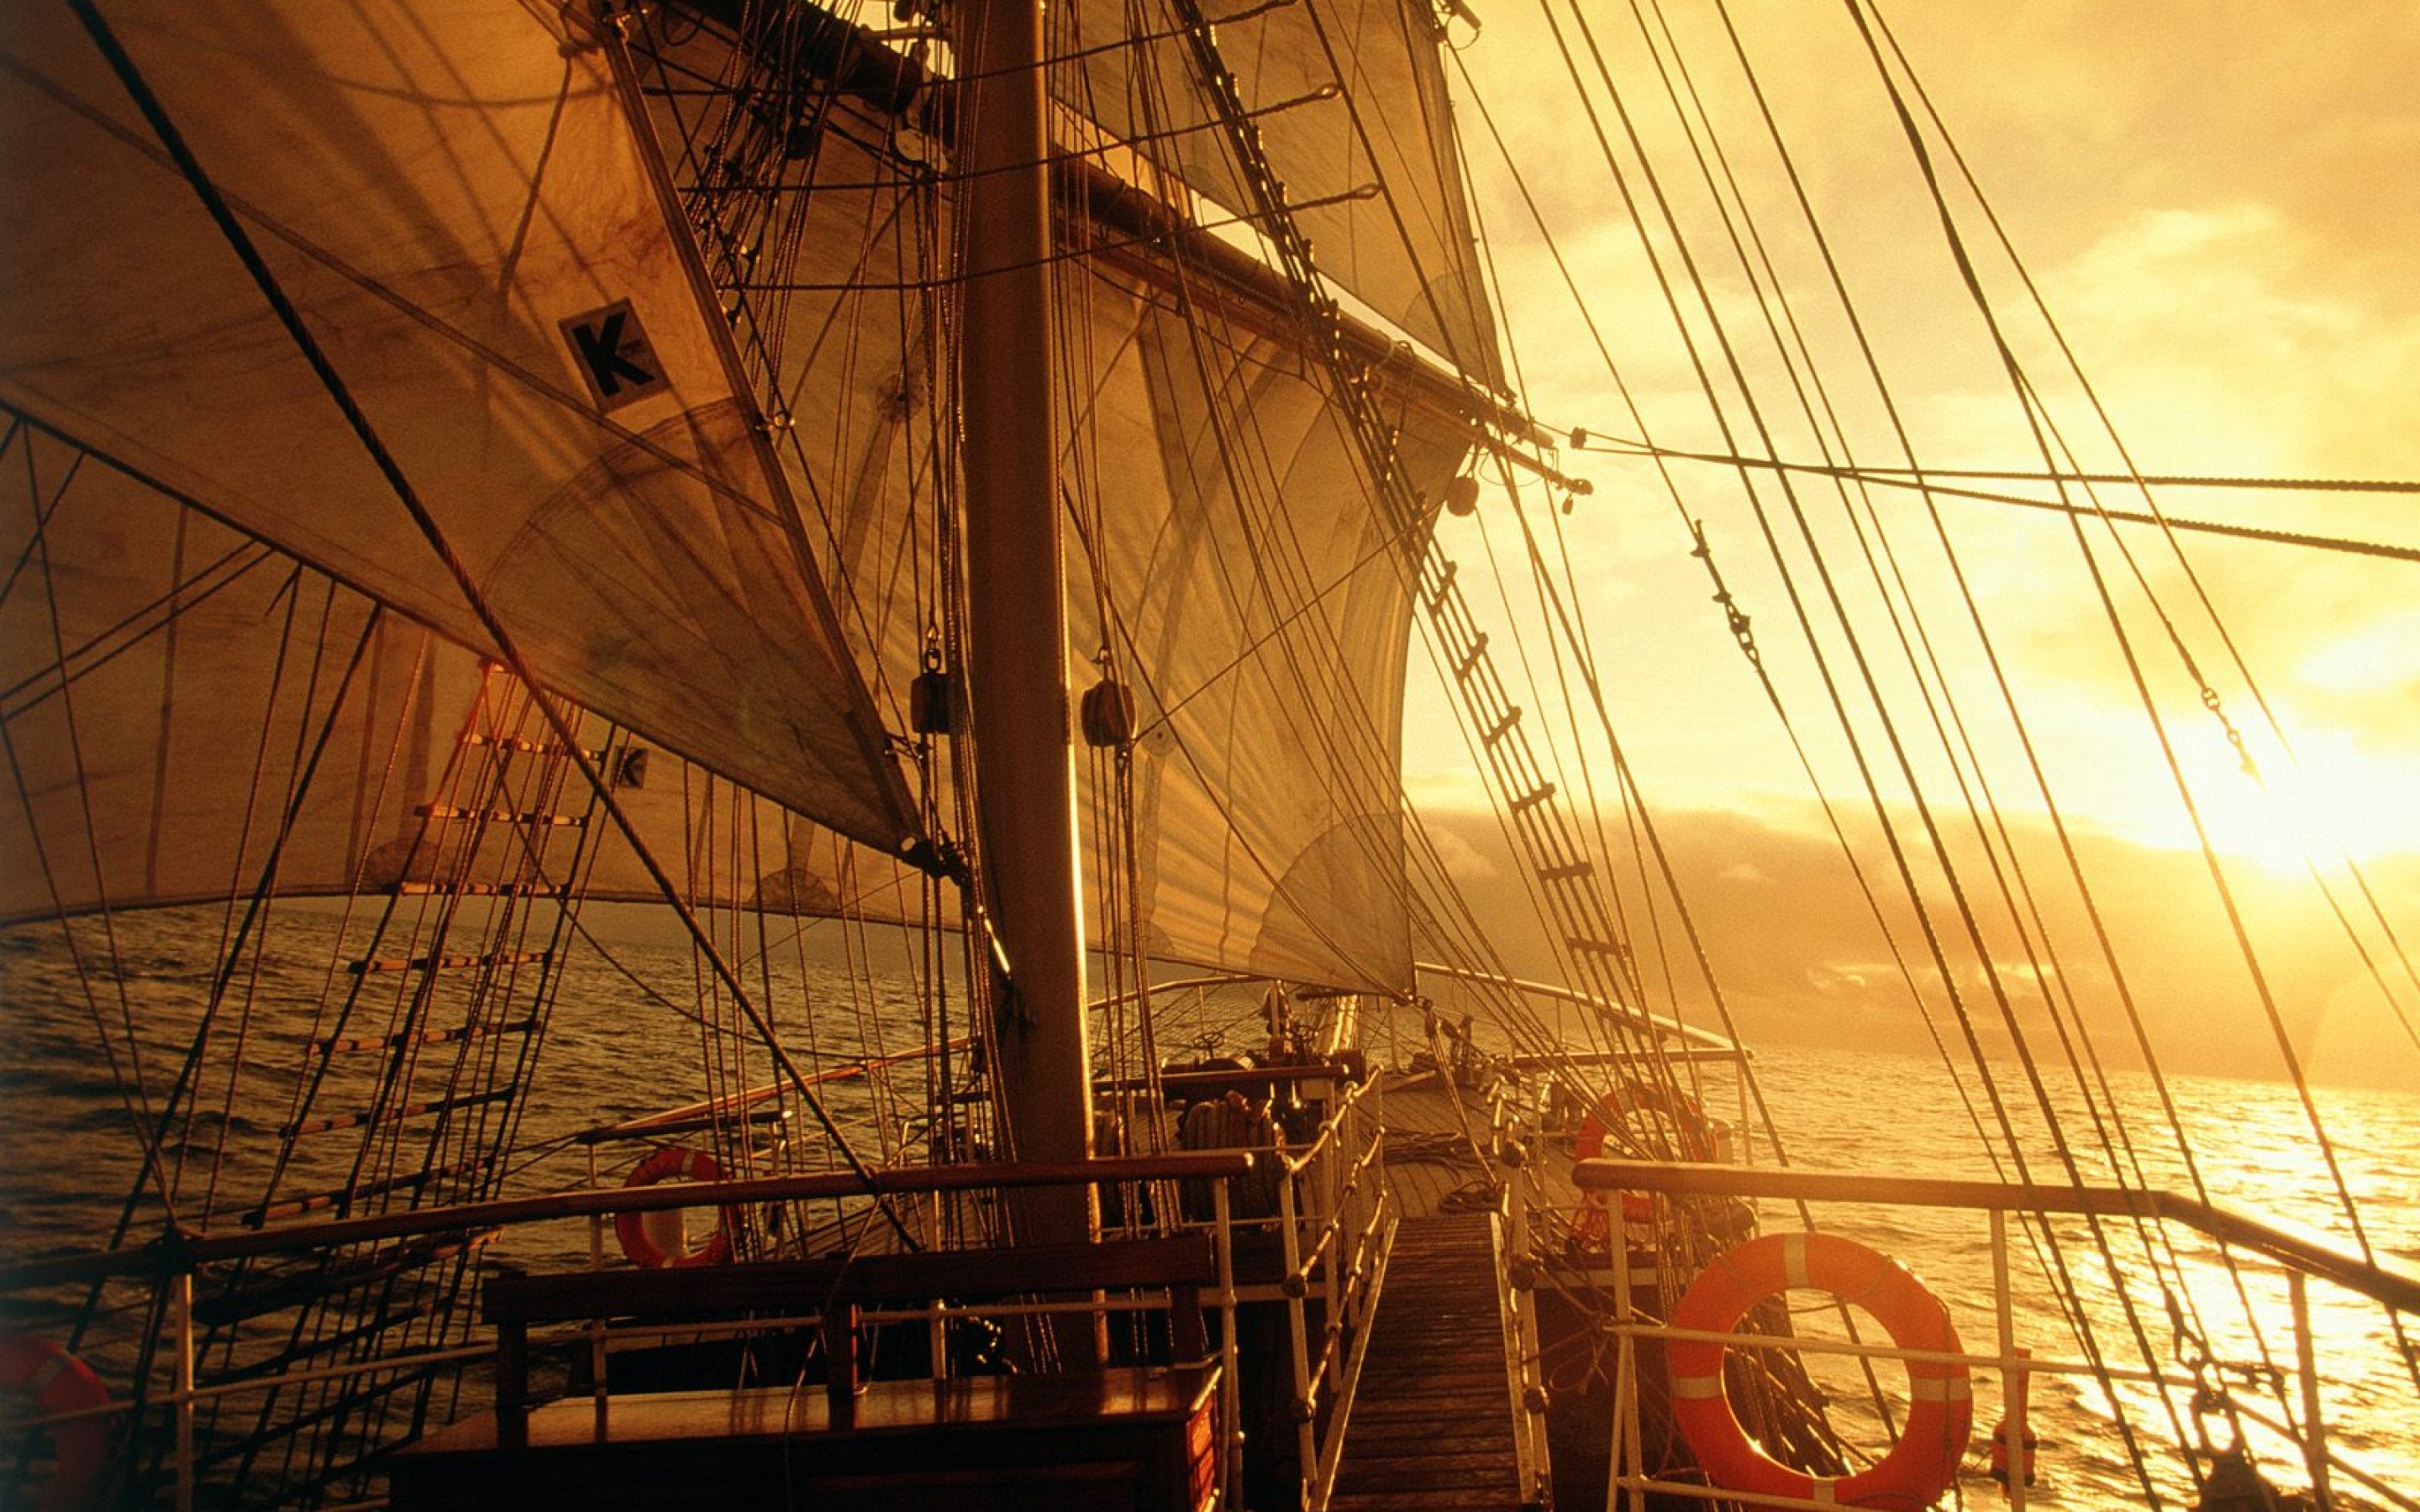 Палуба в тумане. Виды пиратских кораблей. Палуба старинного корабля. Палуба парусного корабля. Вид с палубы корабля.